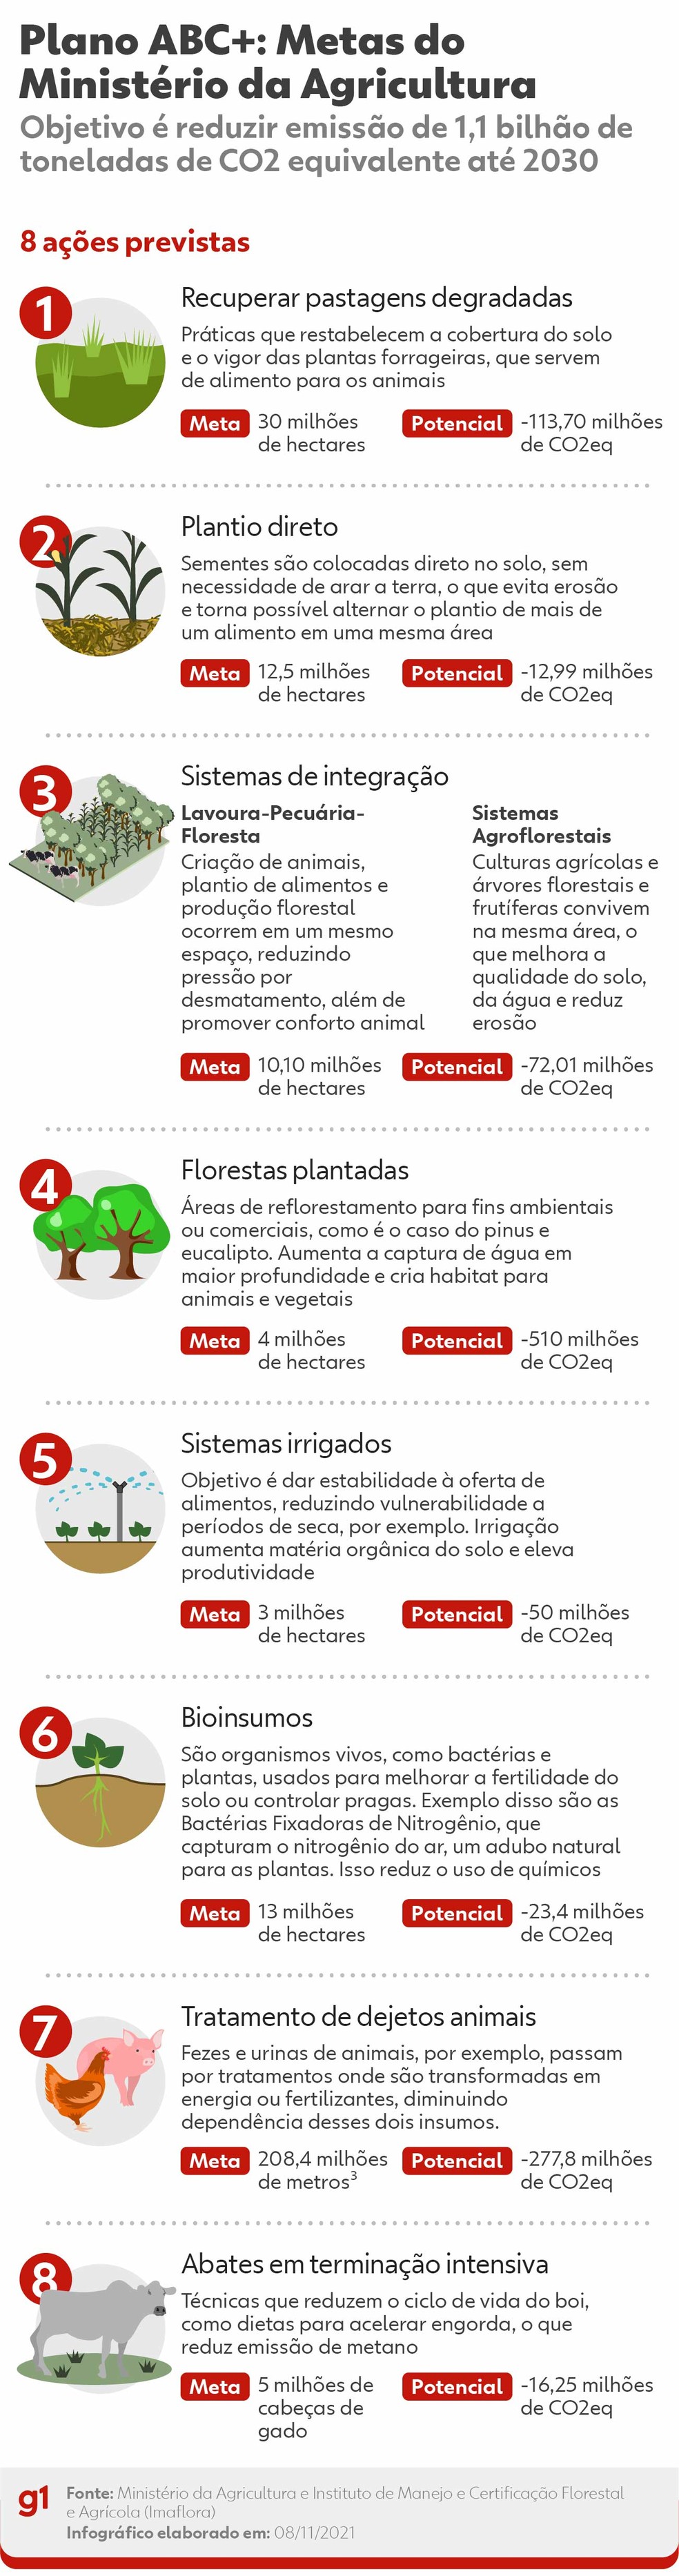 Plano Abc+ E A Preservação Do Meio Ambiente